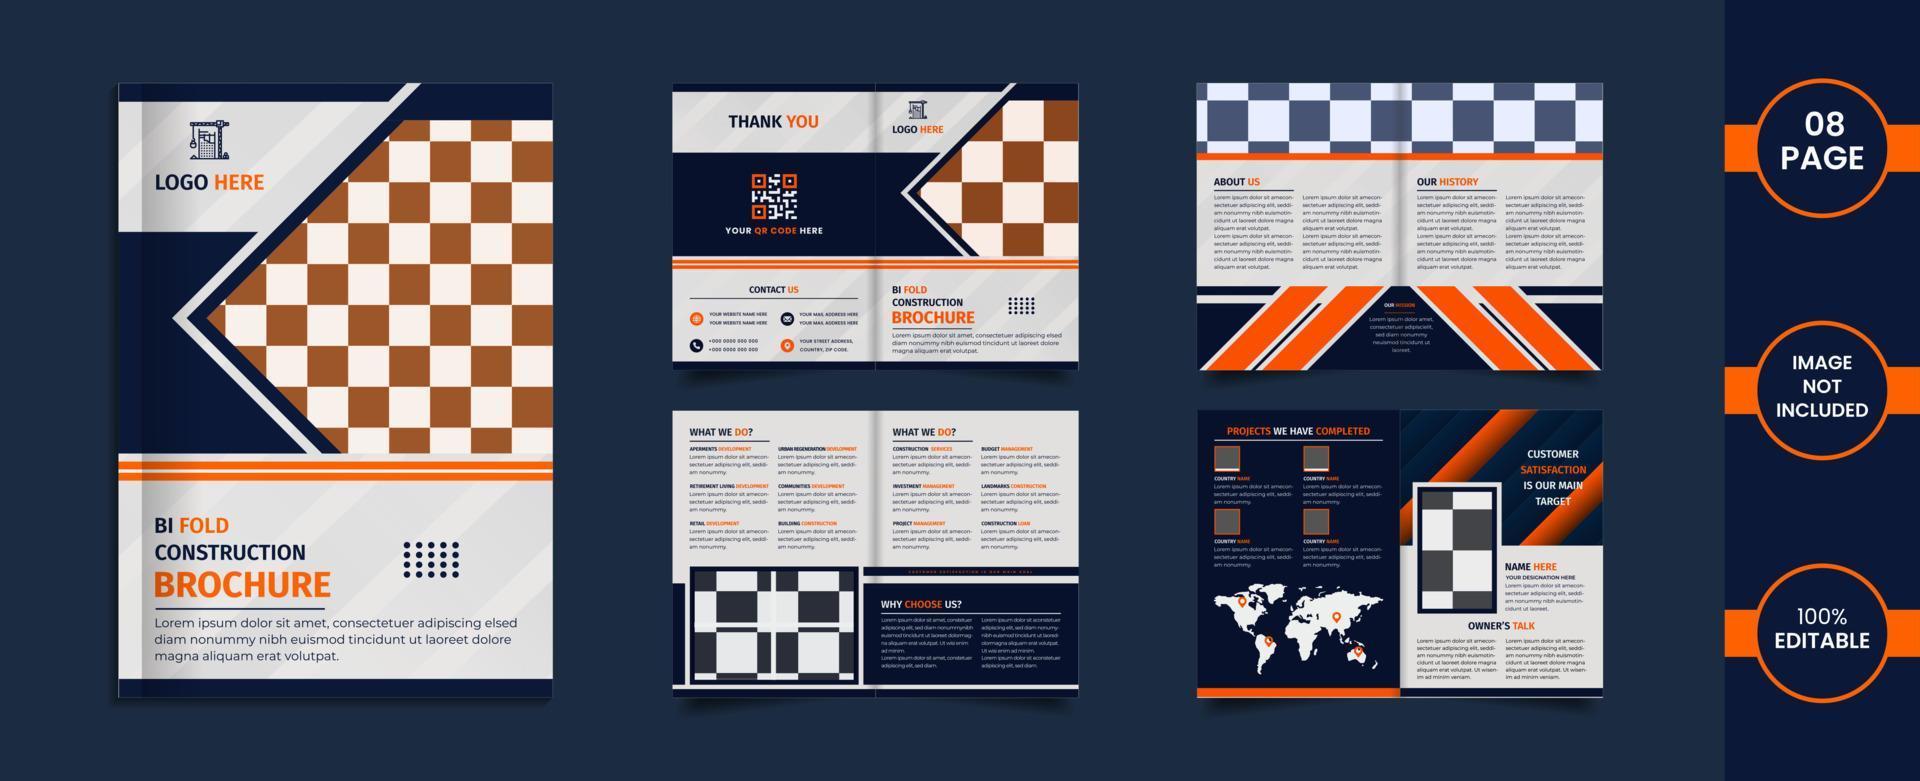 costruzione brochure bifold di 8 pagine con forme e informazioni astratte di colore arancione e blu. vettore